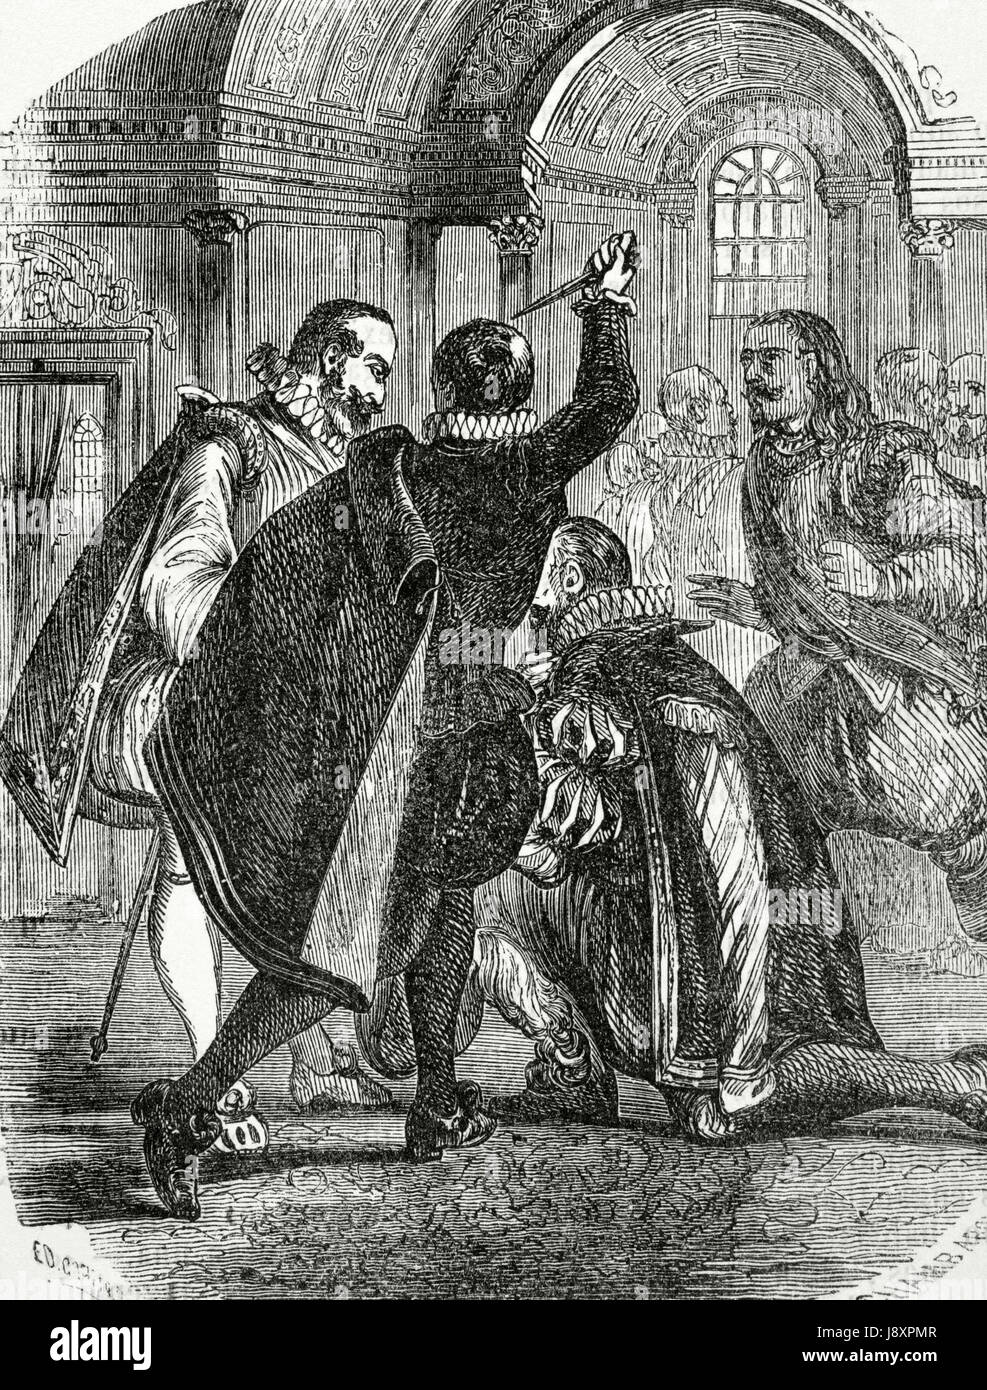 Attentat auf König Heinrich IV. von Frankreich (1553 – 1610) von Jean Chatel (1575-1594) auf Dezember 1594. Kupferstich von Chamb Aron, 1851. Stockfoto